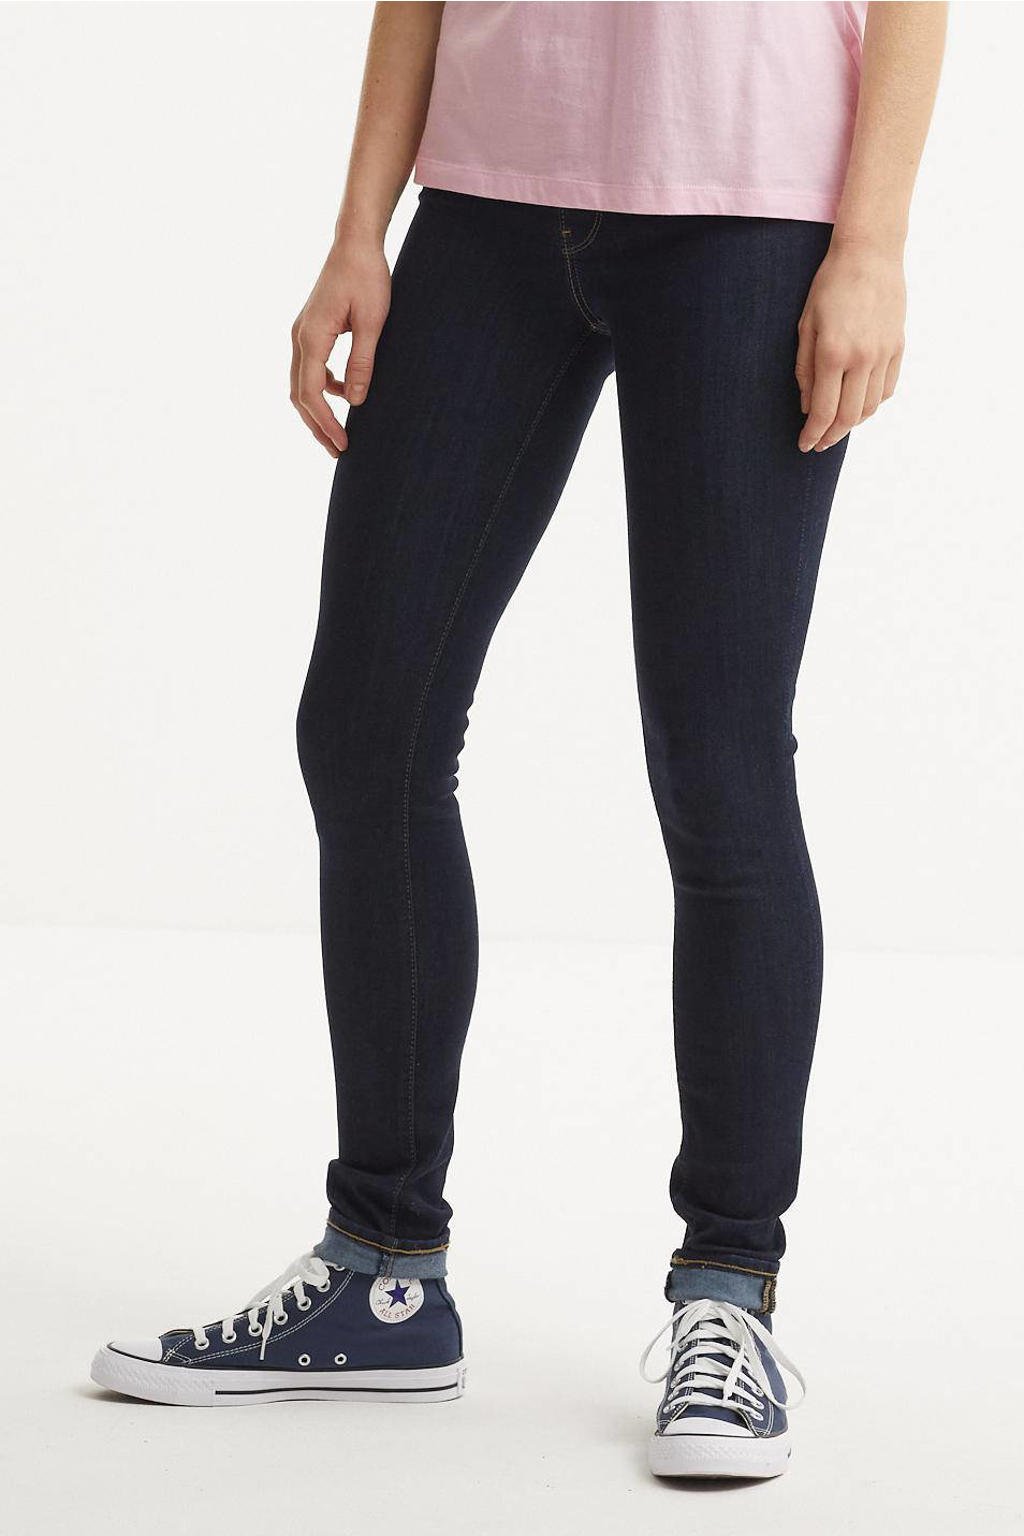 Donkerblauwe dames Levi's high waist skinny jeans bogota feels van duurzaam stretchdenim met rits- en knoopsluiting